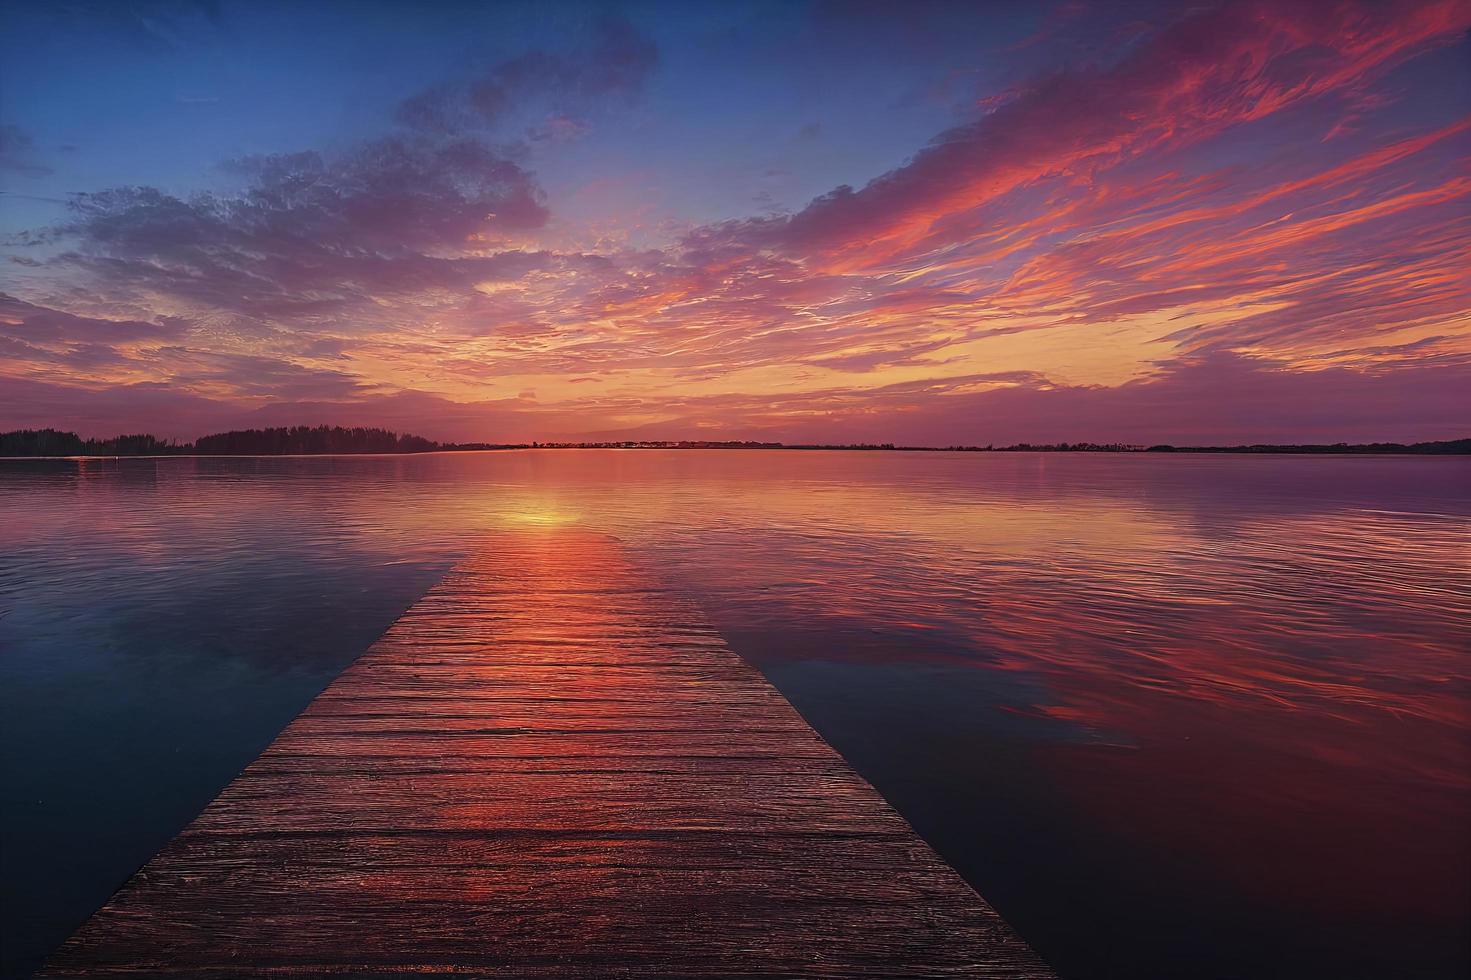 muelle de madera colorido en un lago que está totalmente tranquilo durante la puesta de sol foto